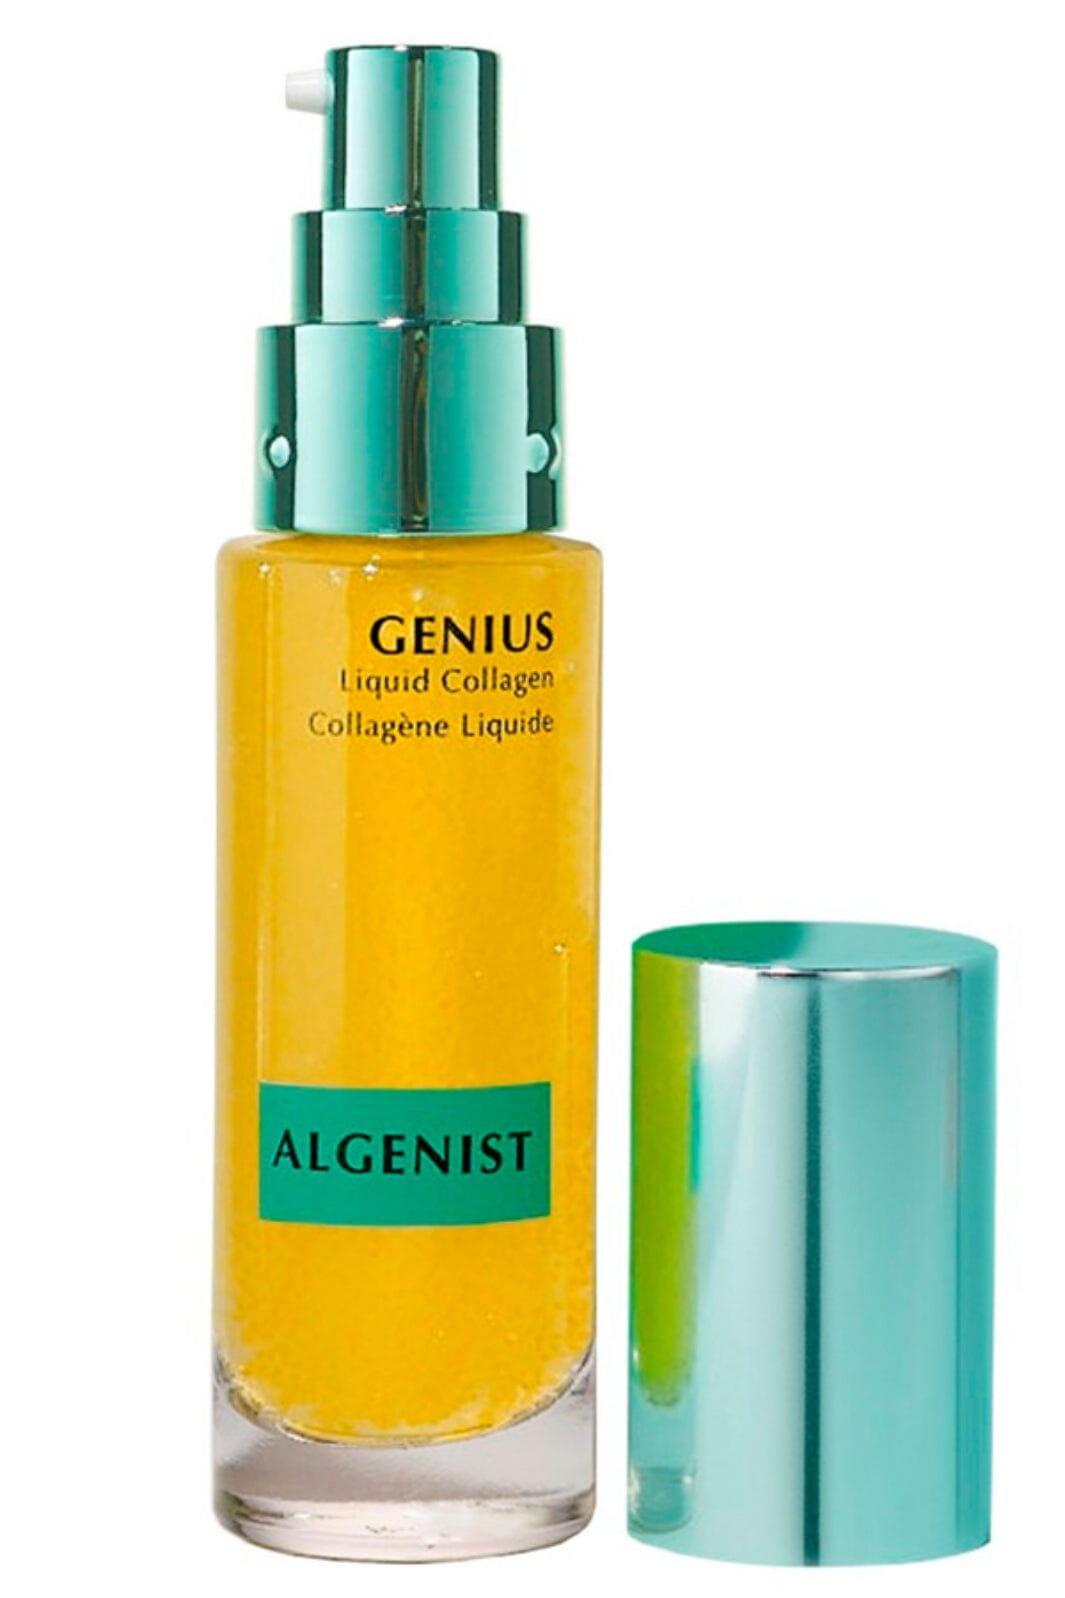 Algenist - Genius Liquid Collagen Serum 